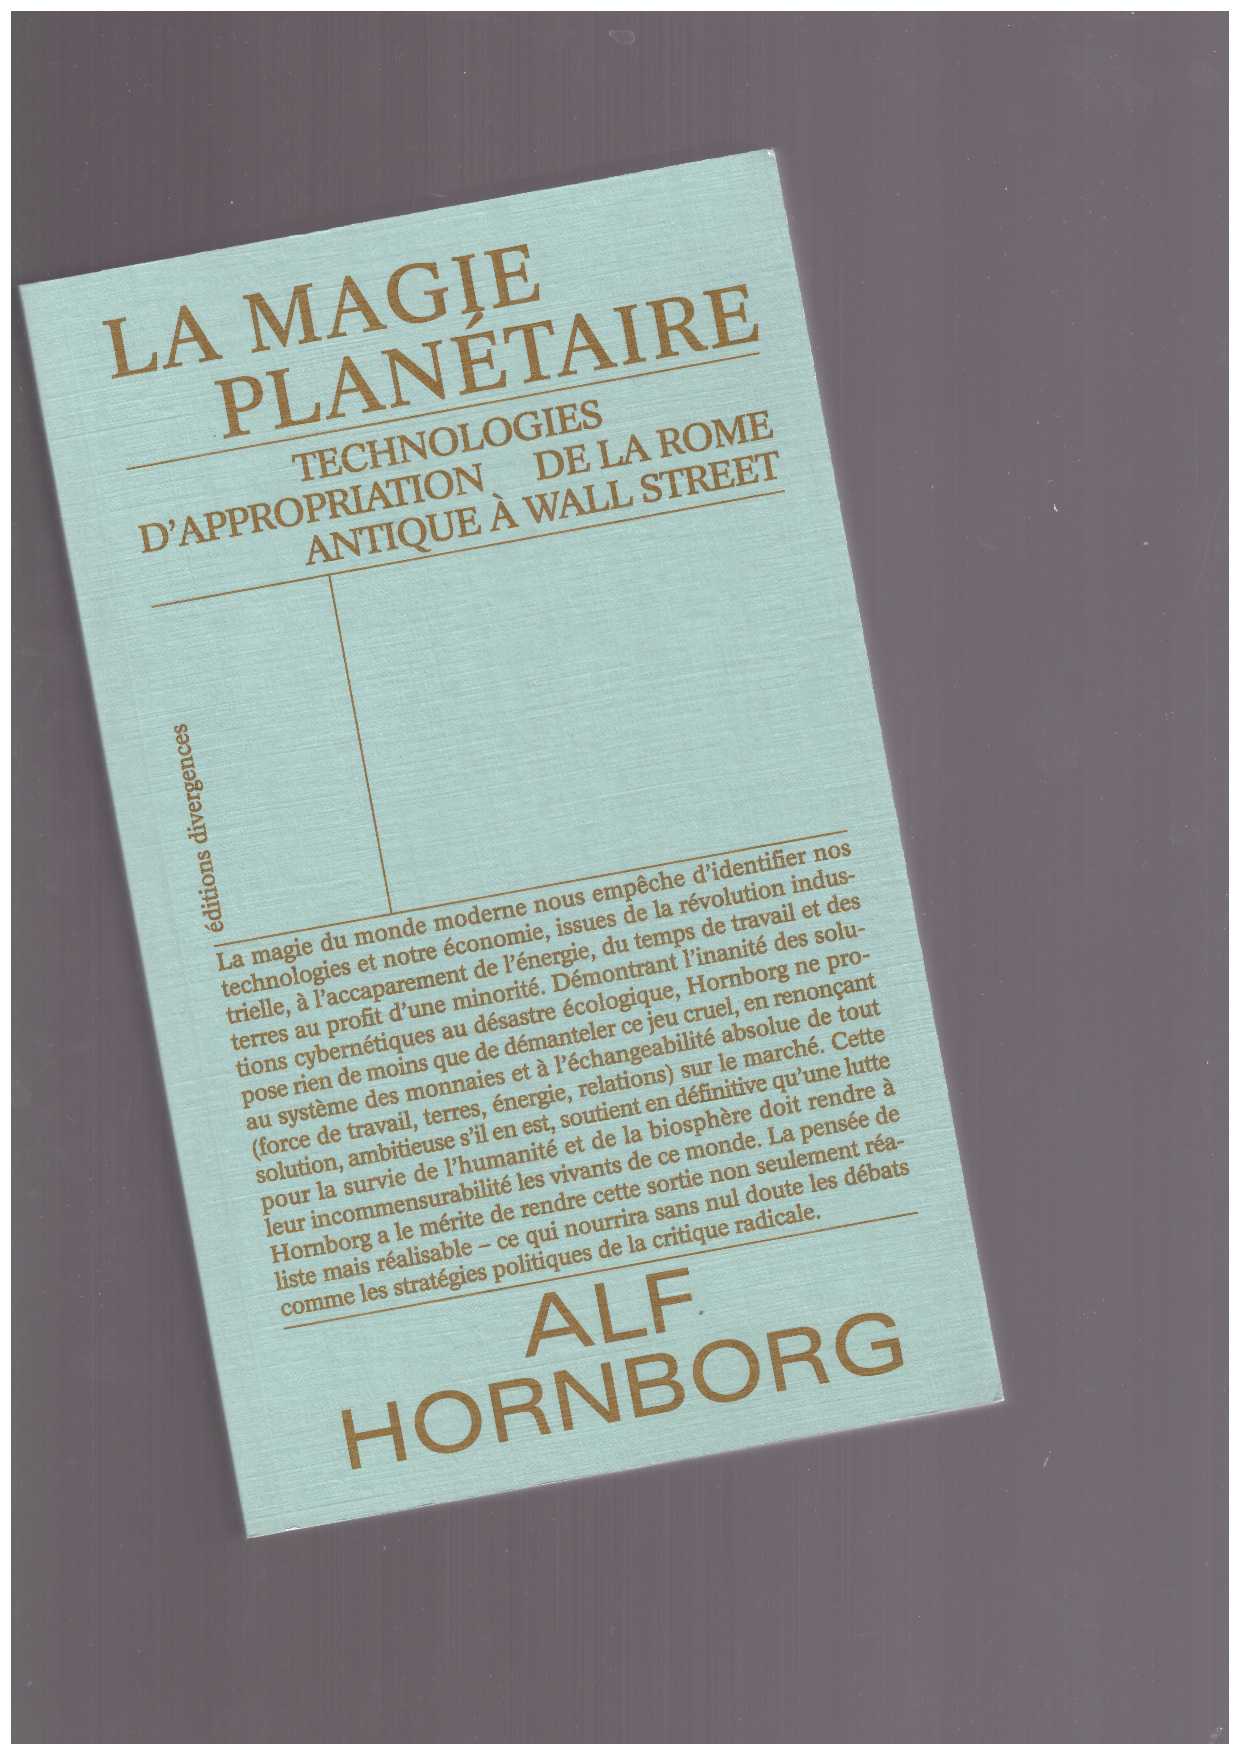 HORNBORG, Alf - La Magie planétaire. Technologies d'appropriation de la Rome antique à Wall Street